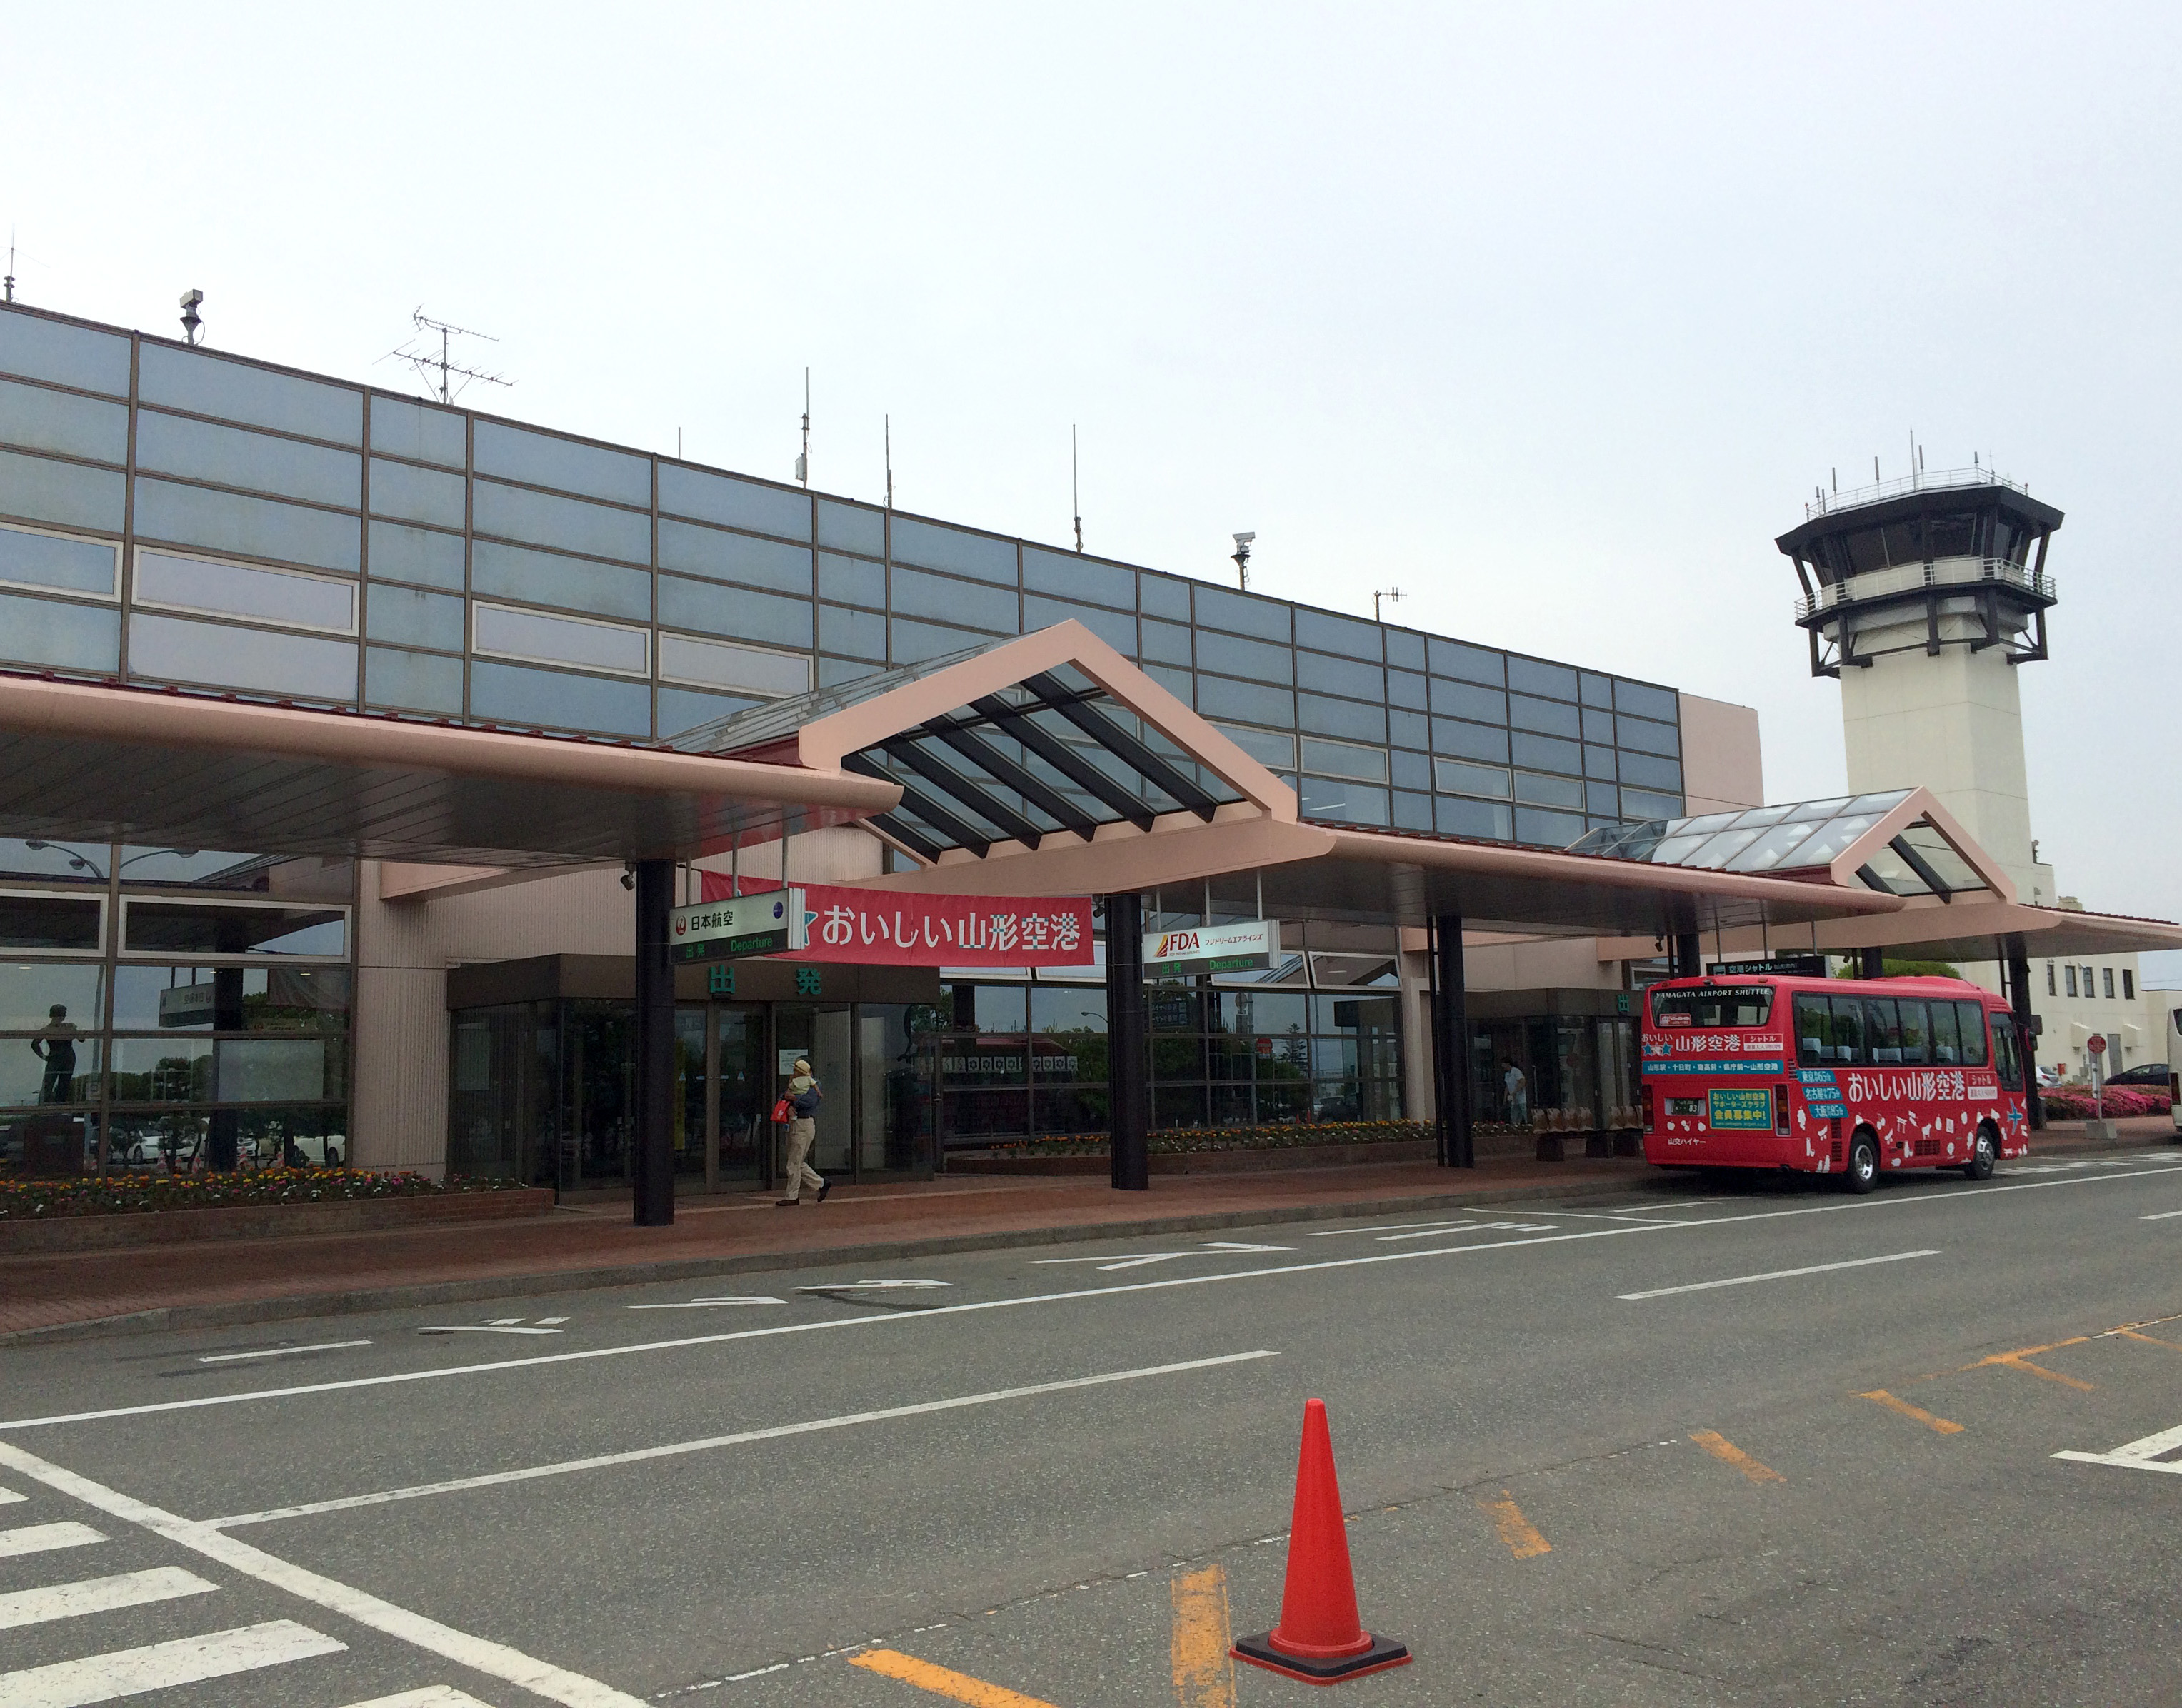 山形県の 山形空港 の愛称にちょっとビックリした件 Oc山形空港でも良かったんじゃないか ロケットニュース24